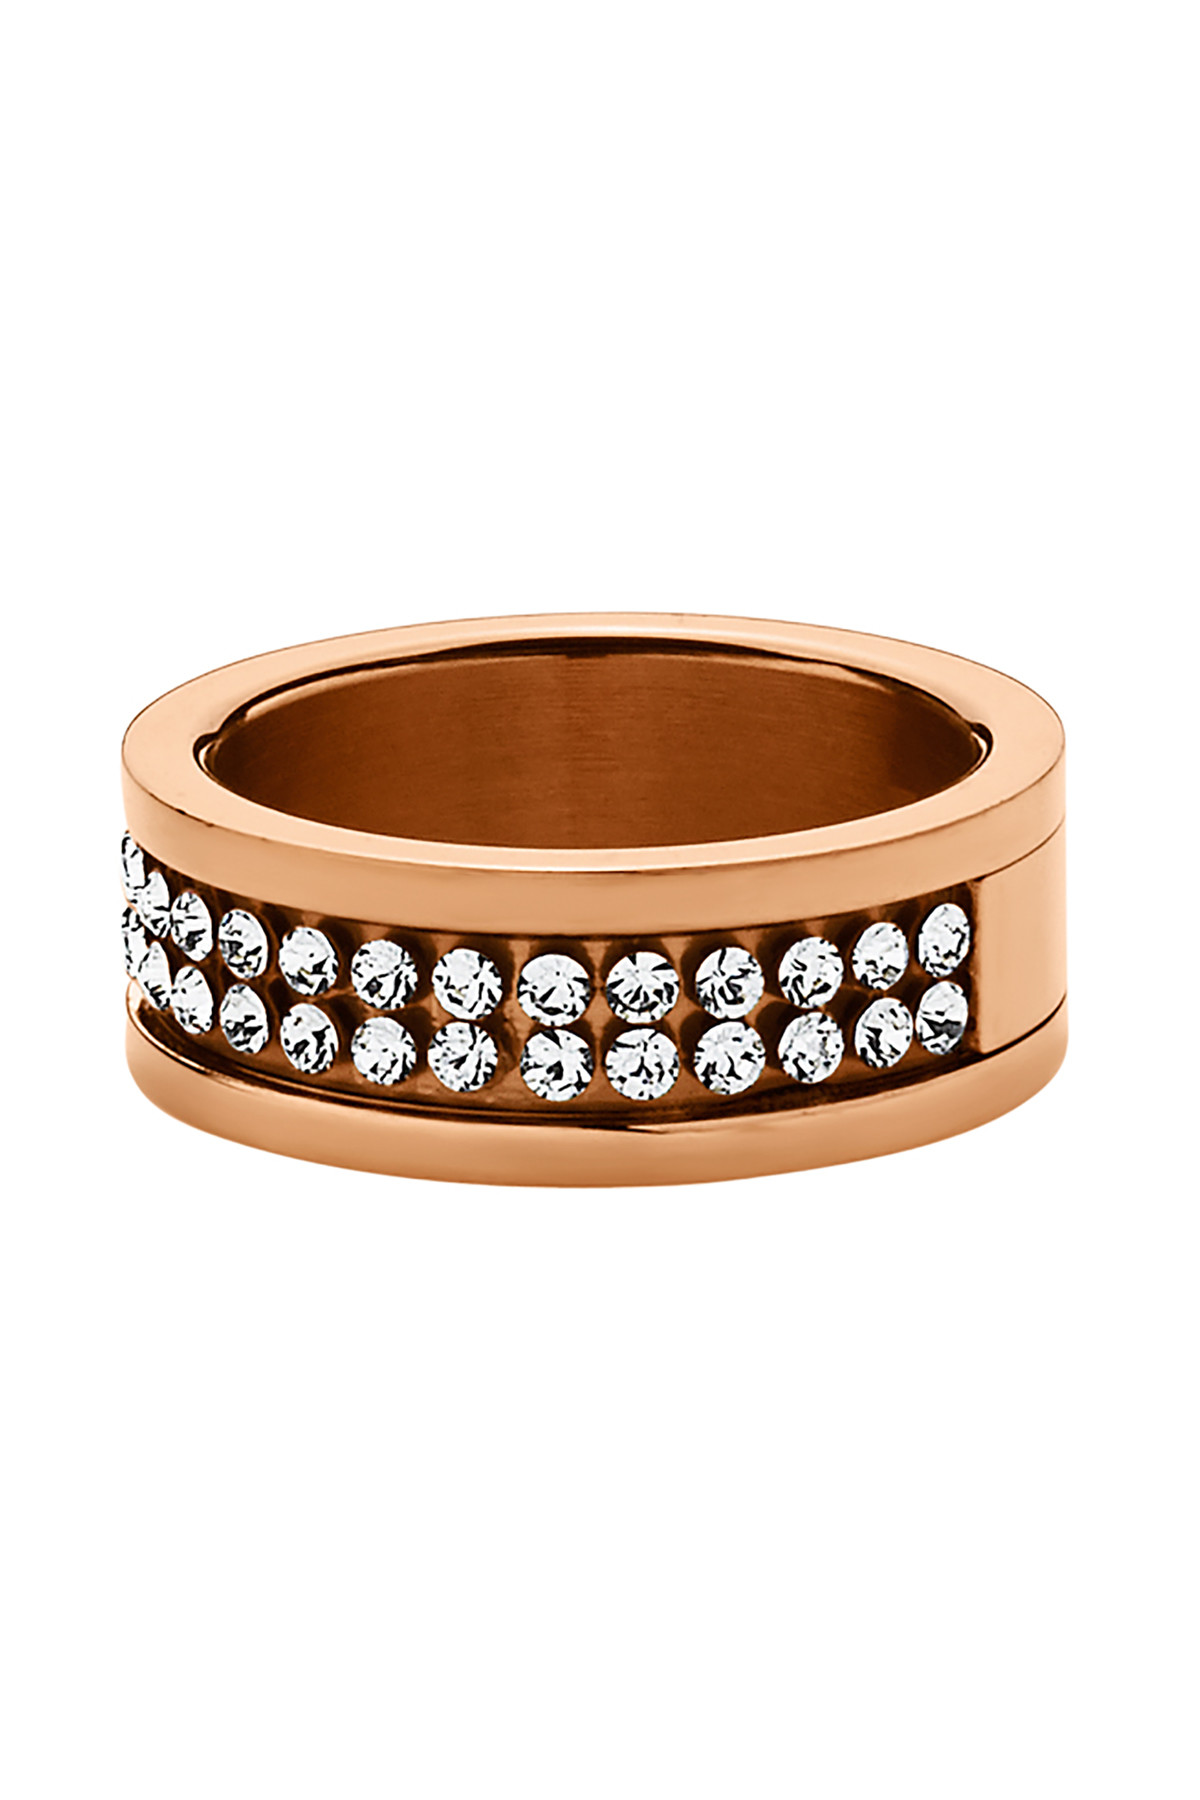 Billede af Dyrberg/Kern Fratianne Ring, Color: Gold/Crystal, Ii/, Women